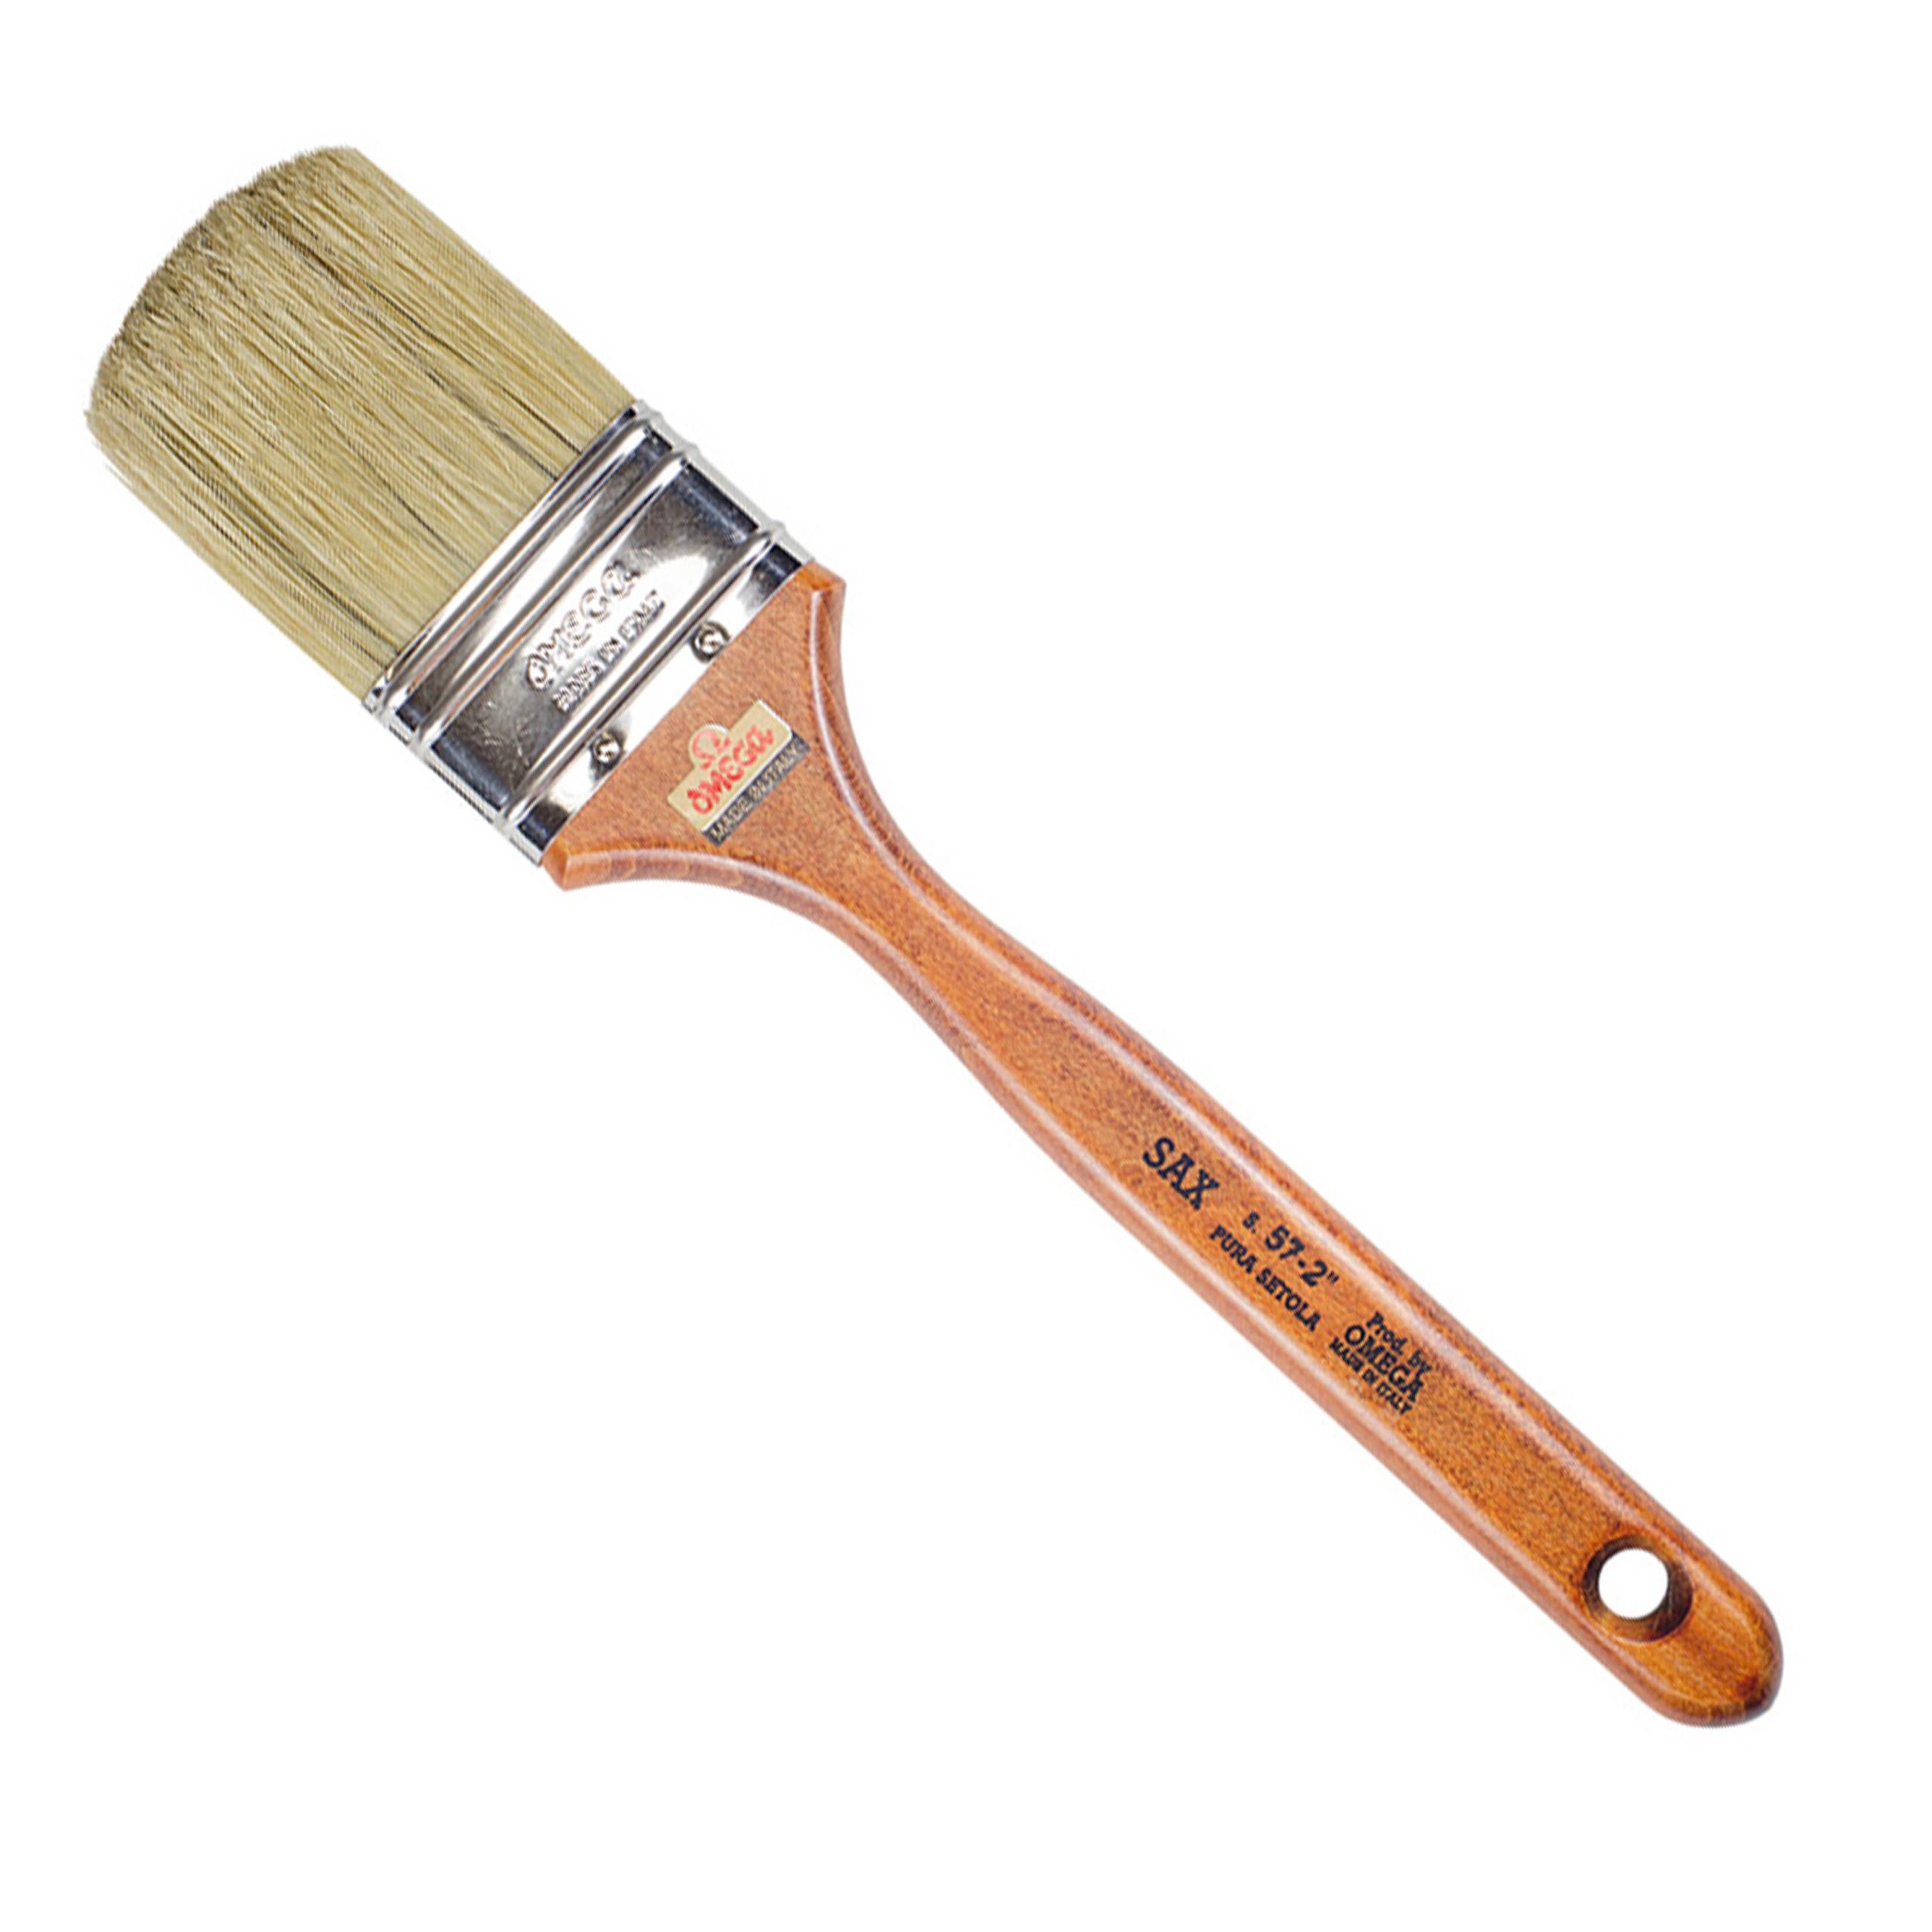 Omega : Brush S.57 size 2 1/2 inch